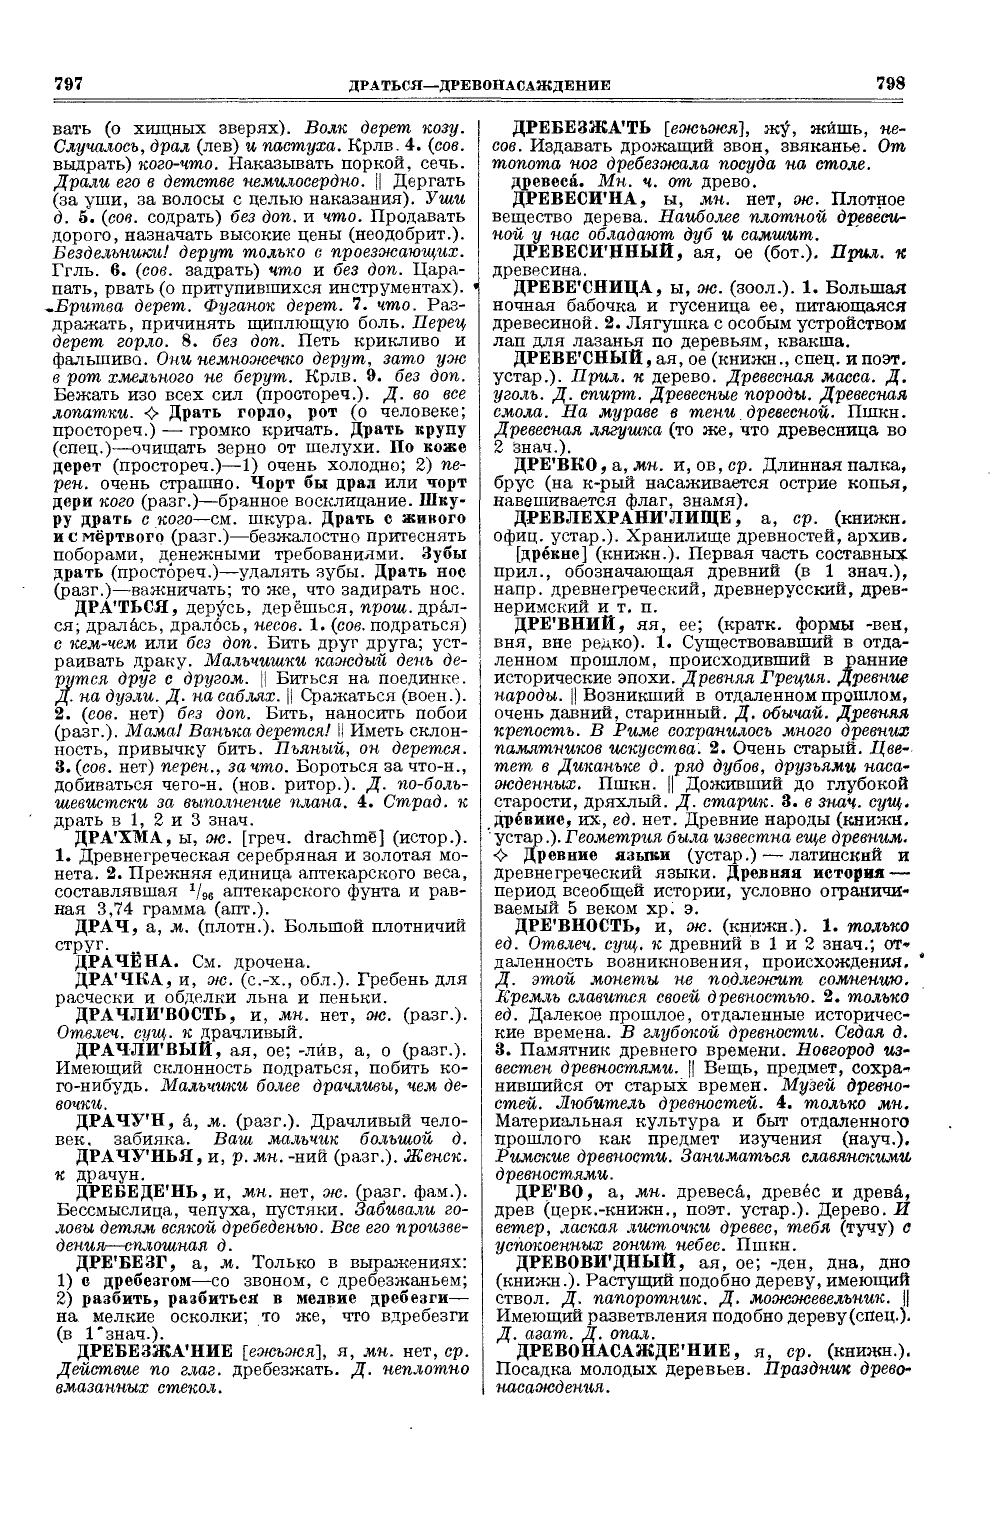 Фотокопия pdf / скан страницы 437 толкового словаря Ушакова (том 1)